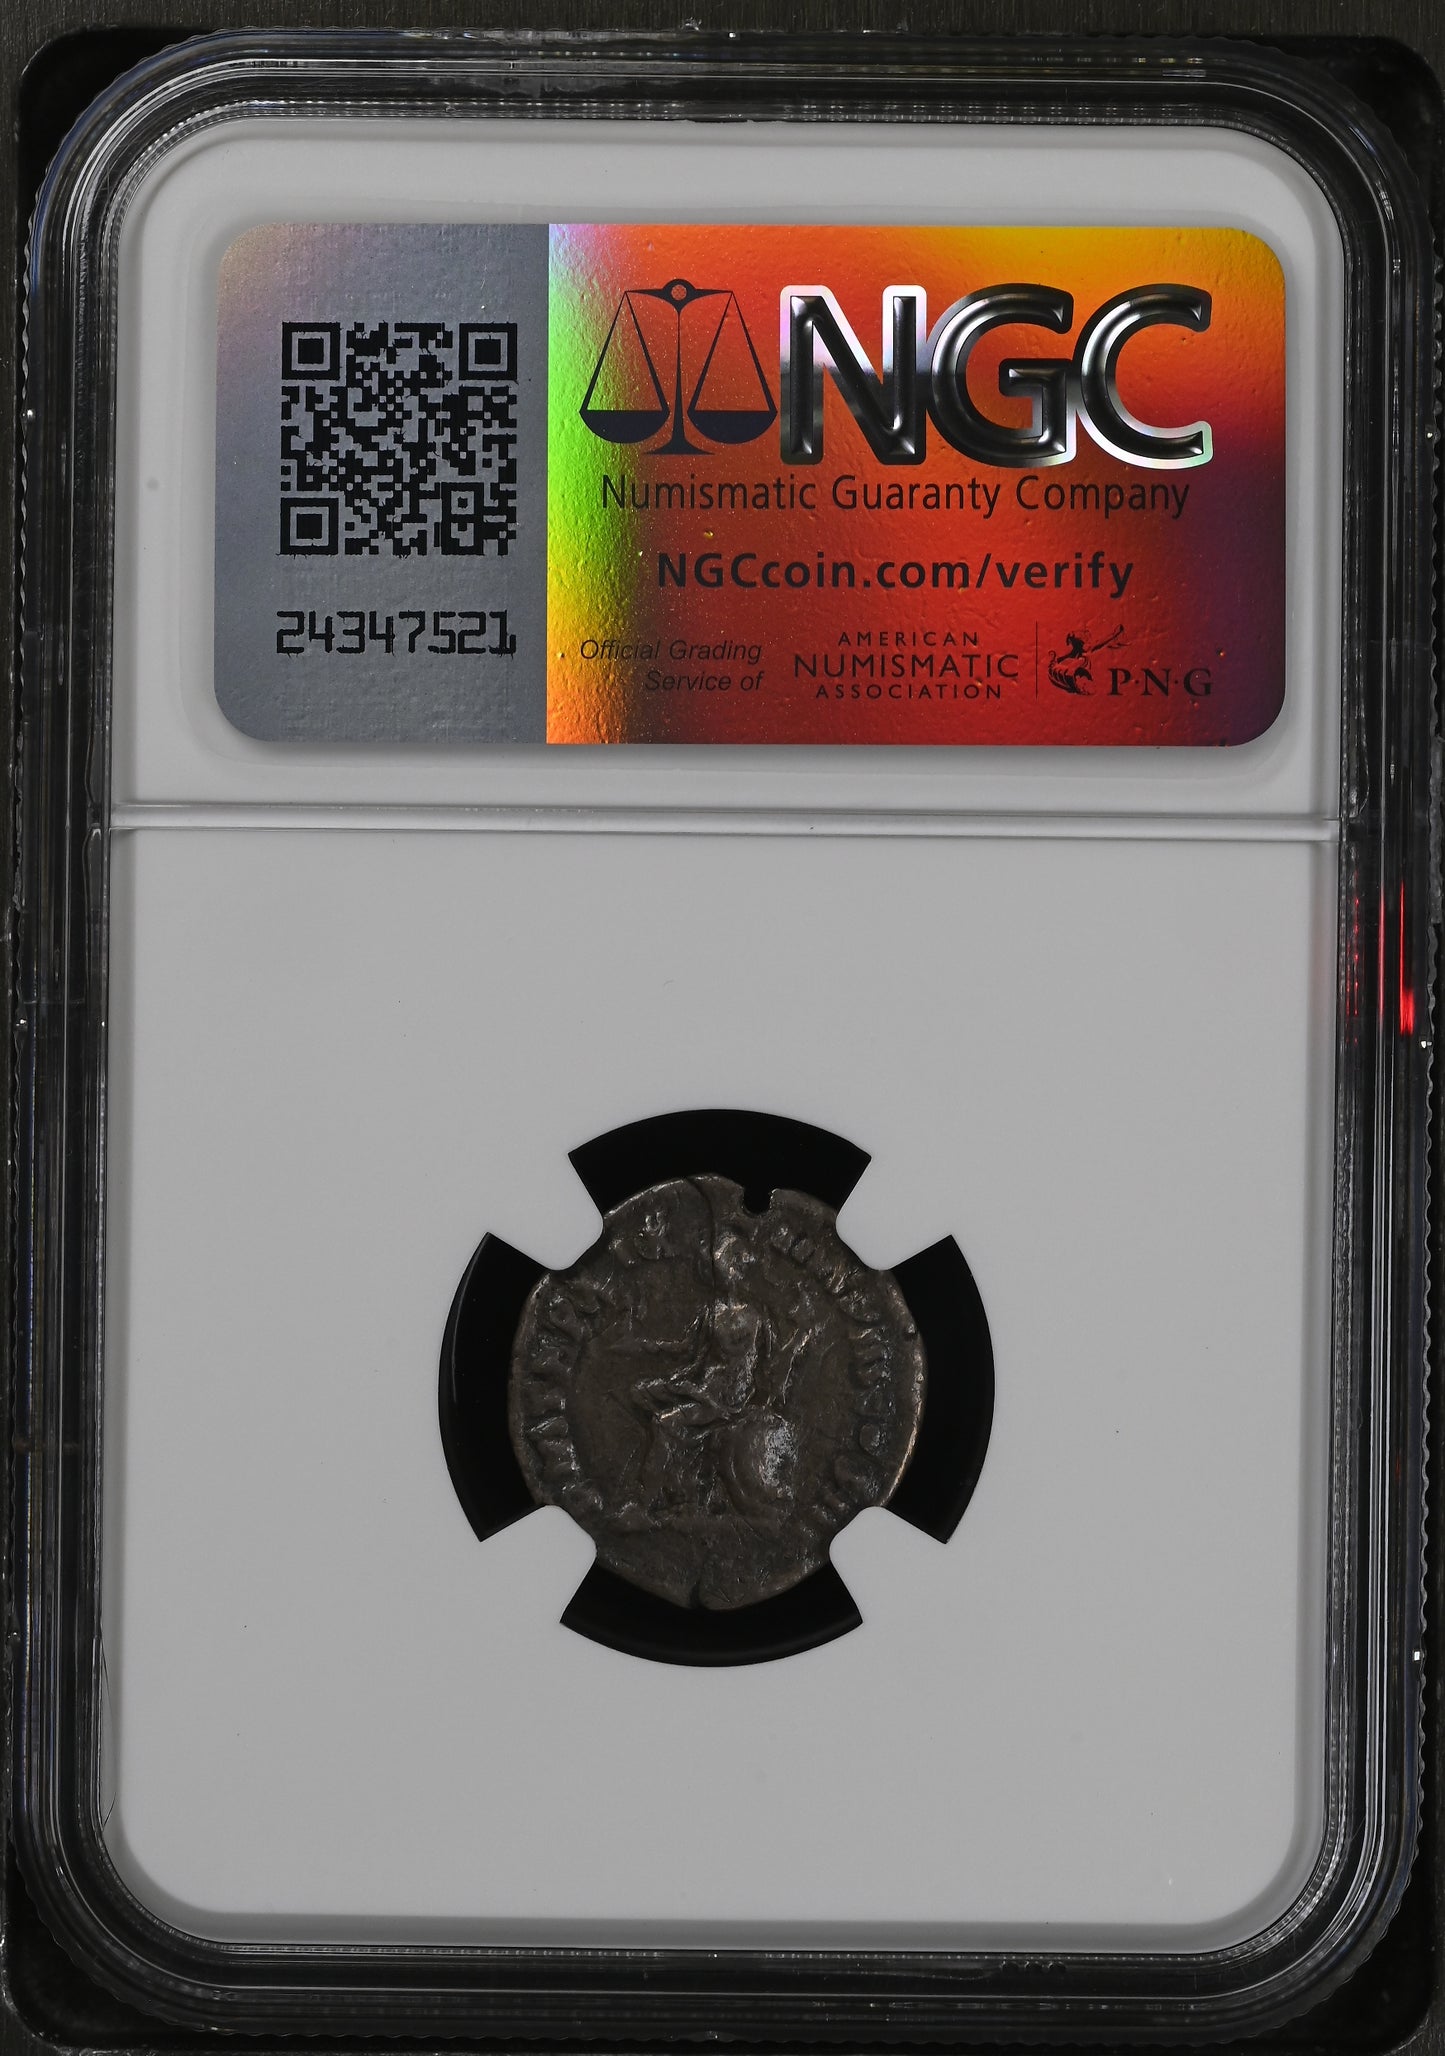 Roman Empire - Marcus Aurelius - Silver Denarius - NGC VF - RIC:141